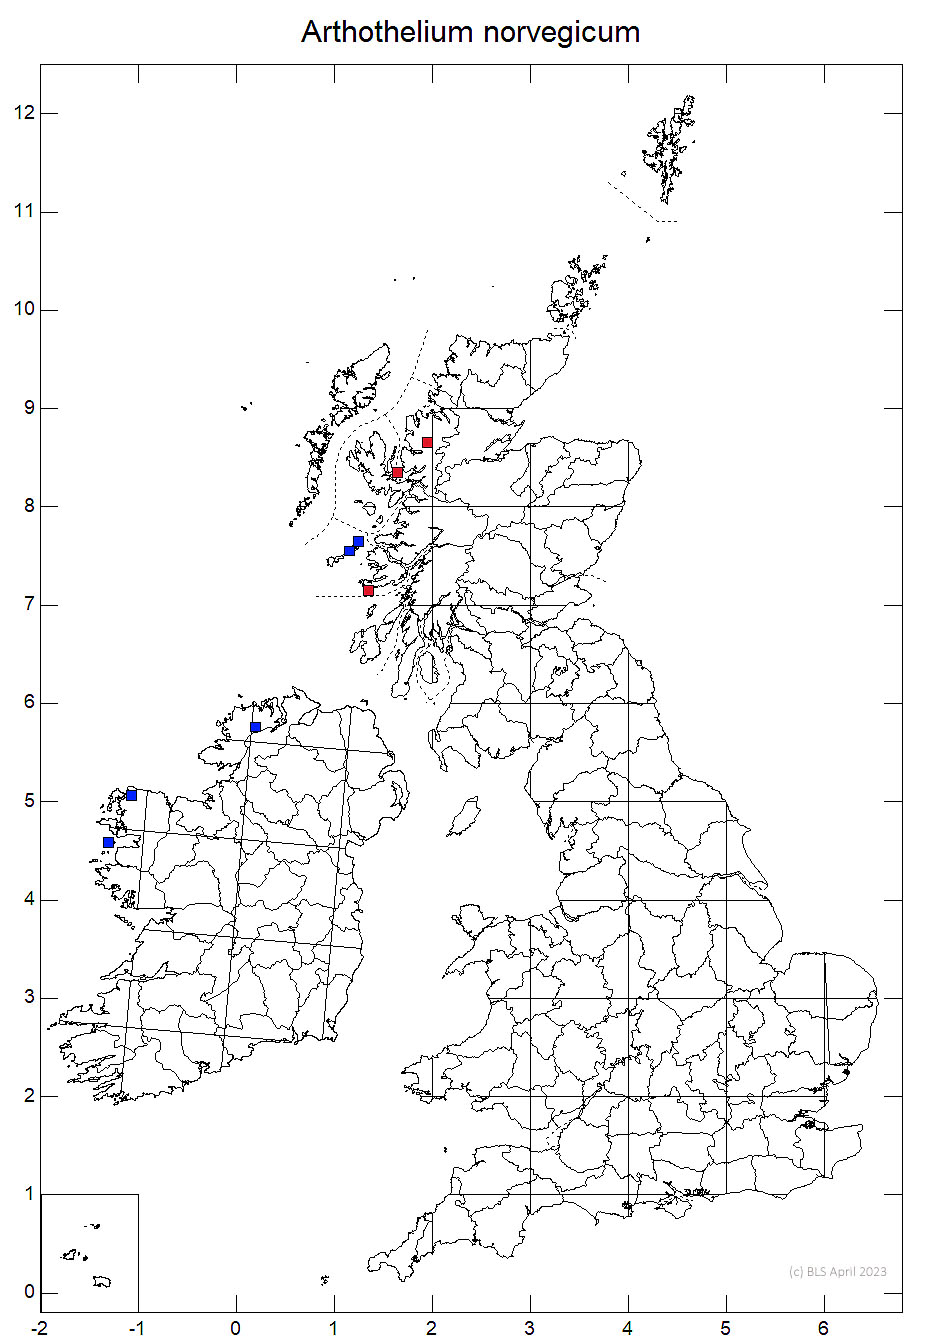 Arthothelium norvegicum 10km sq distribution map